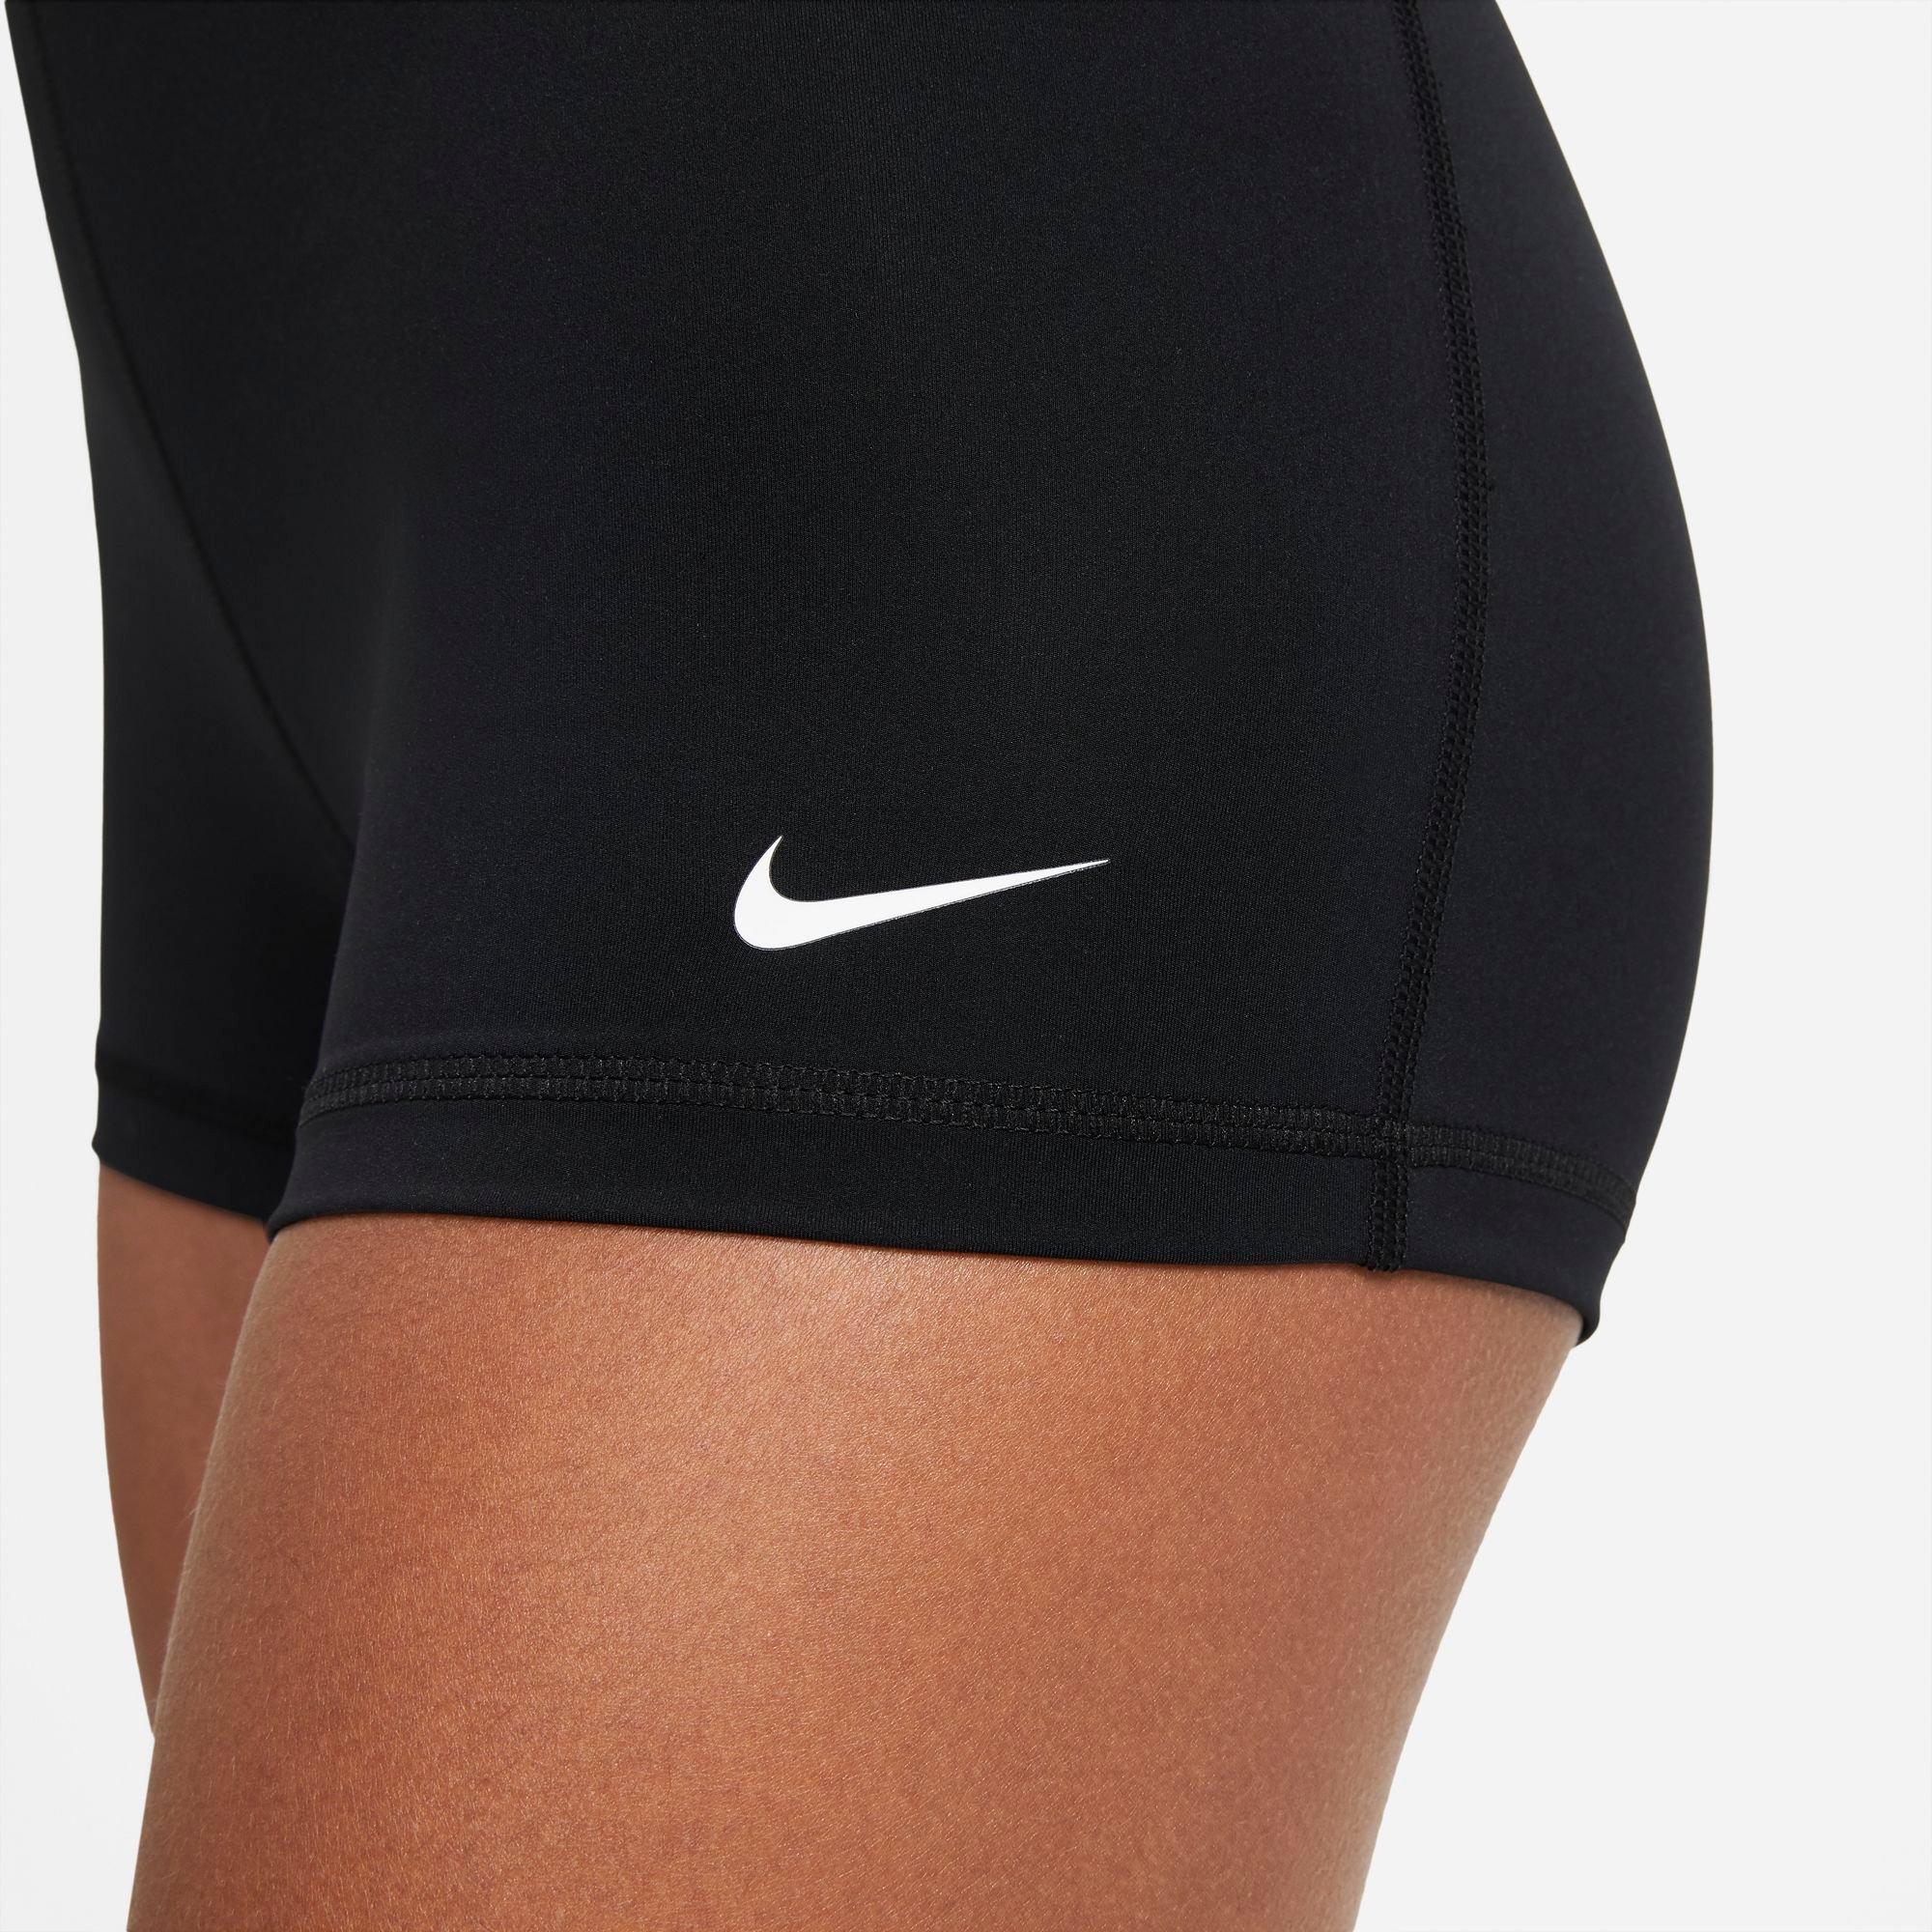 Шорты найк про. Шорты Nike Pro 365. Nike Pro w NP 365 shorts Black шорты. Шорты короткие женские Nike Pro 365. Найк тайтсы женские короткие.